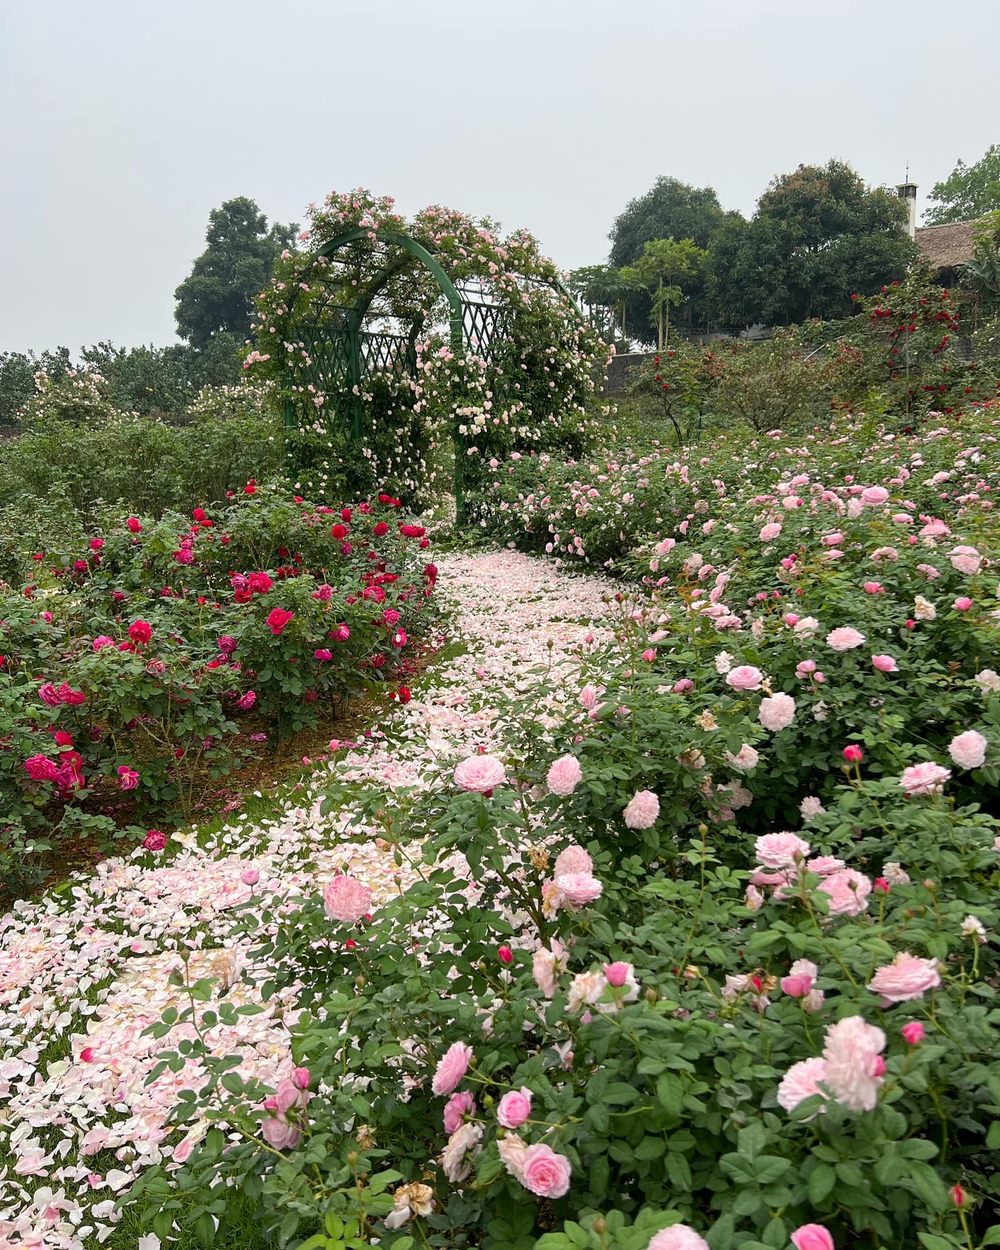 Mùng 3 Tết đến thăm vườn hồng rộng 6.000m² của người phụ nữ ở Hà Nội - Ảnh 9.